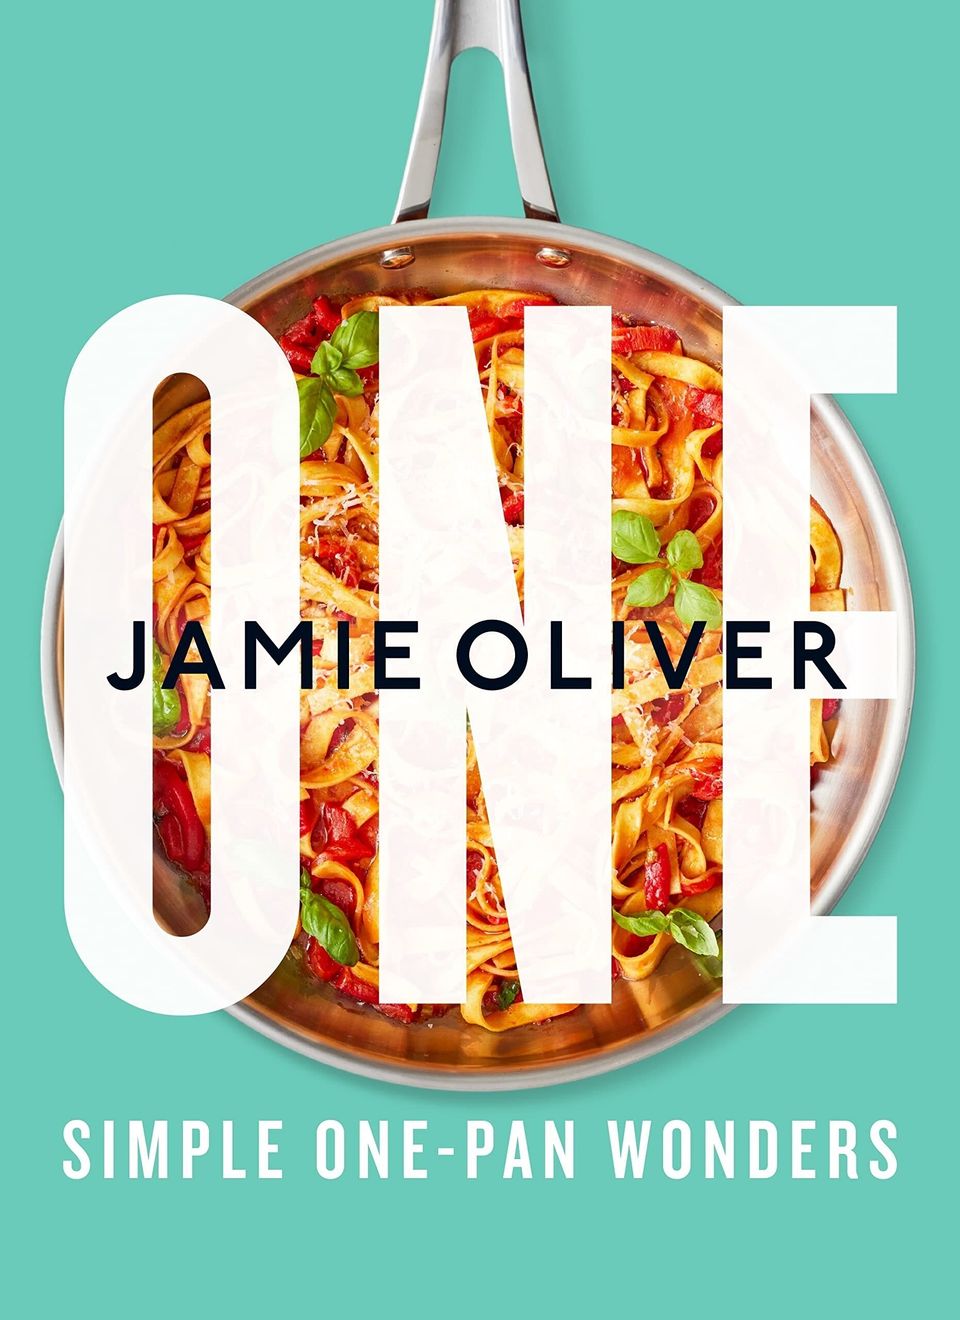 One: Simple One-Pan Wonders (Jan. 10, 2023)